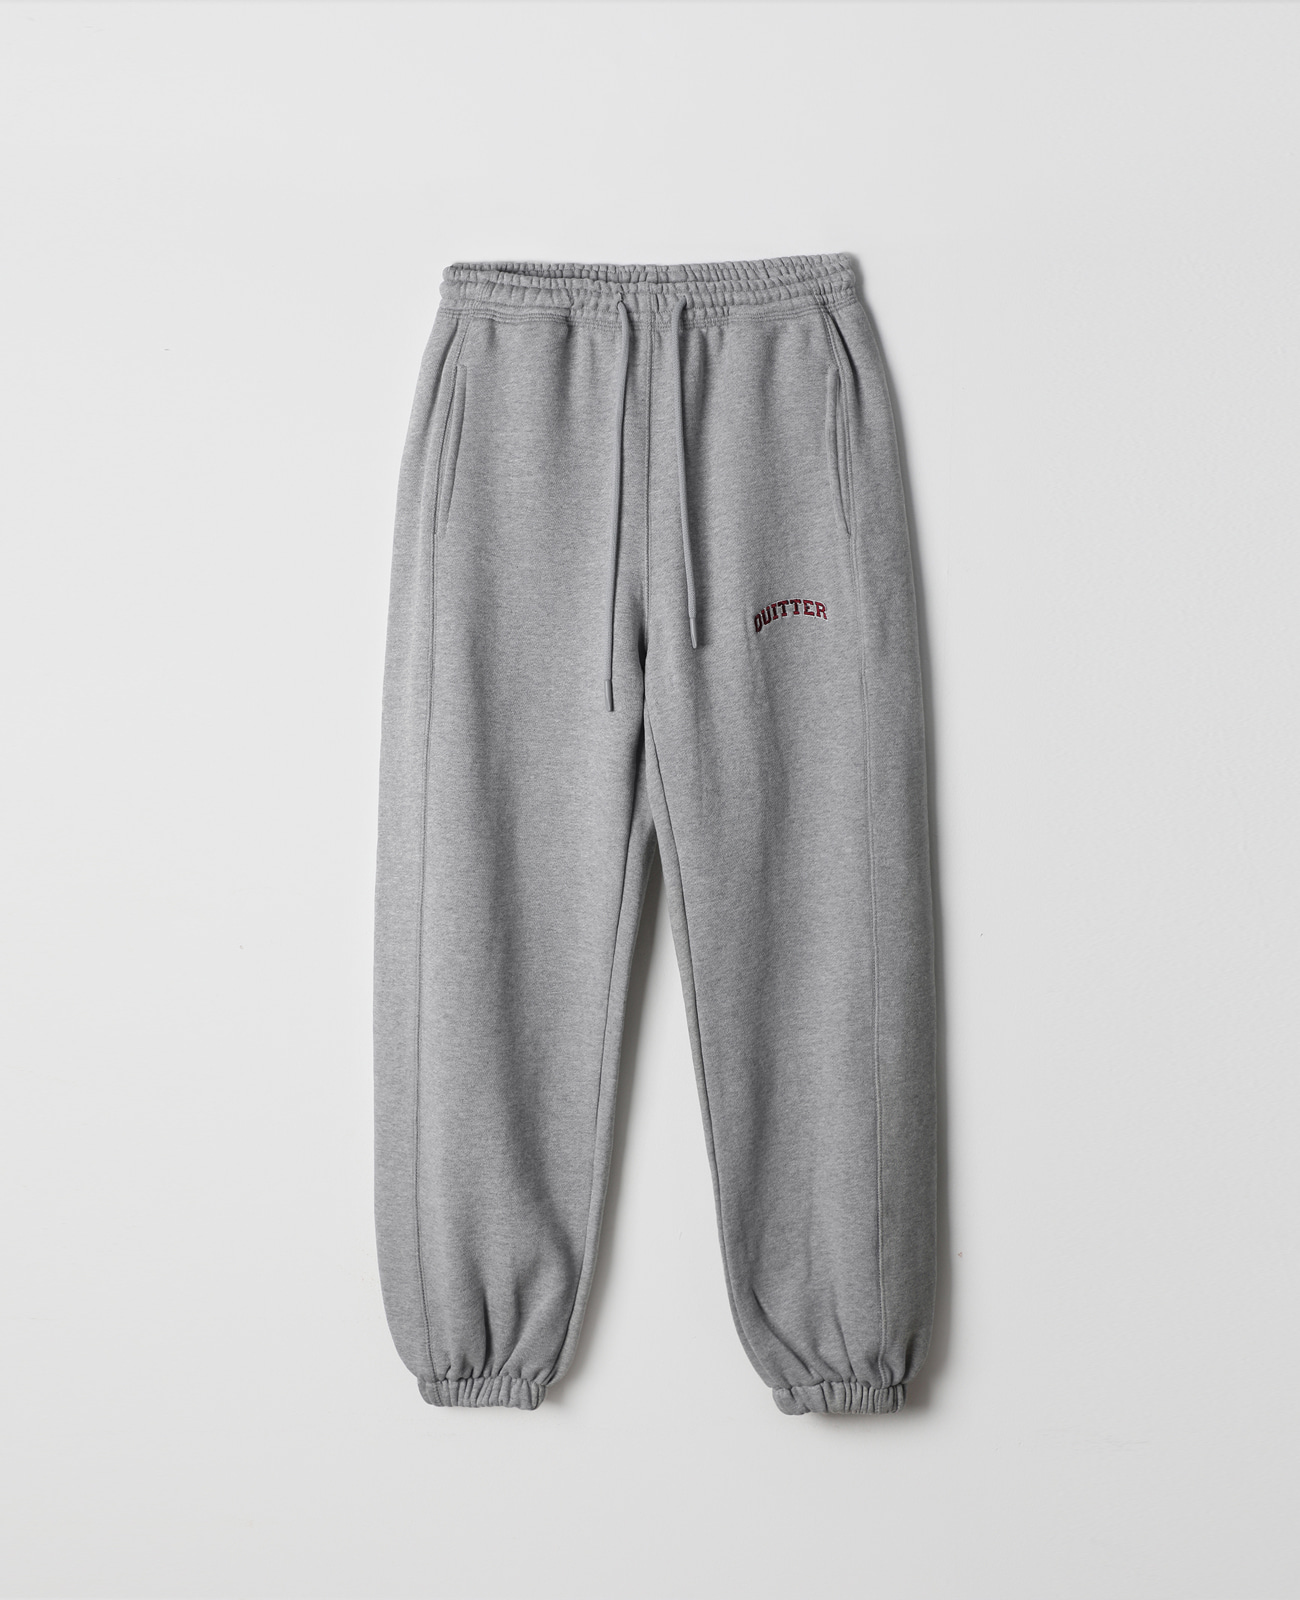 jogger pants  (gray)